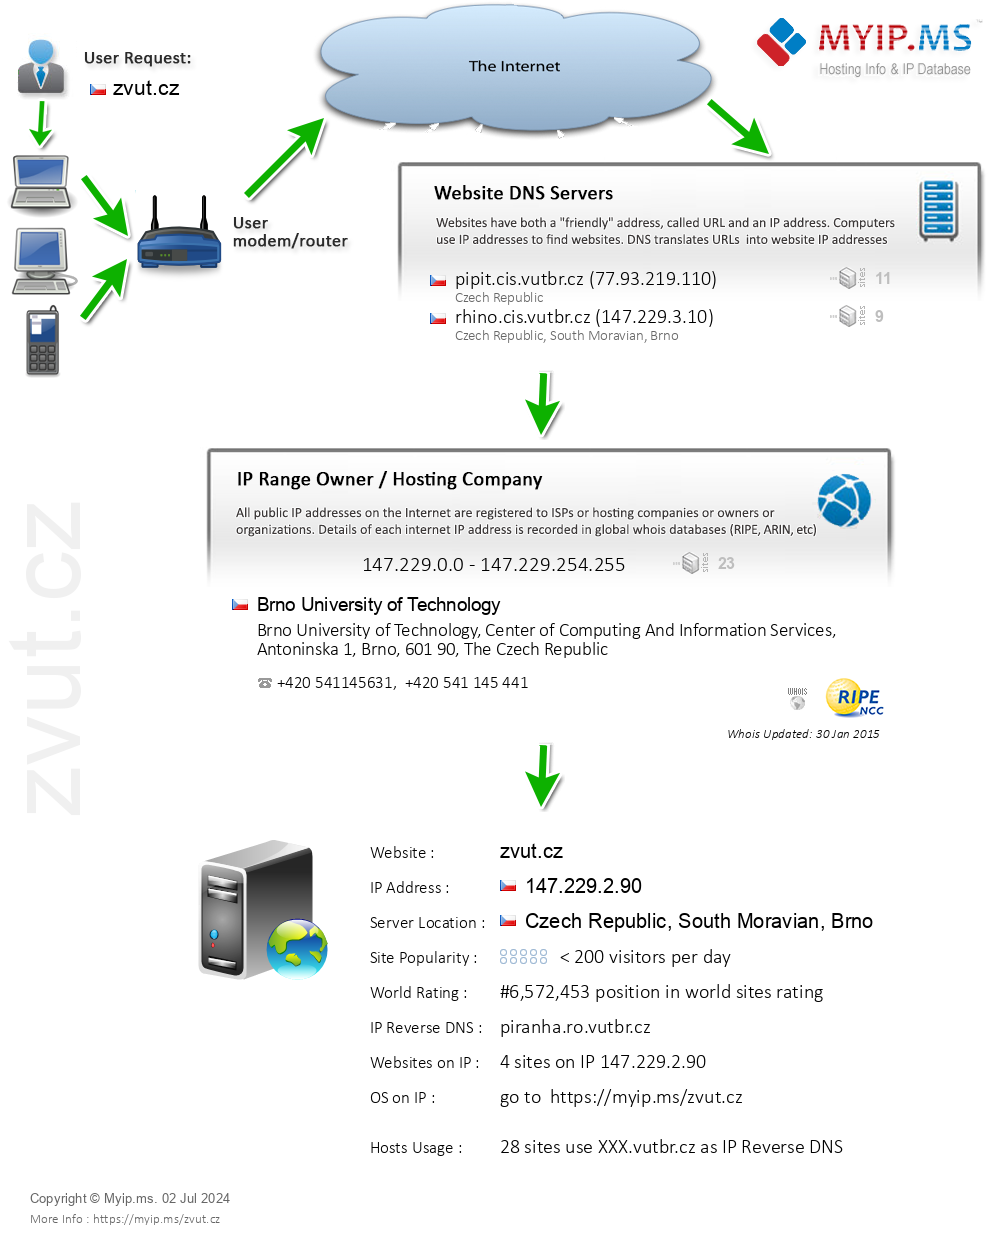 Zvut.cz - Website Hosting Visual IP Diagram